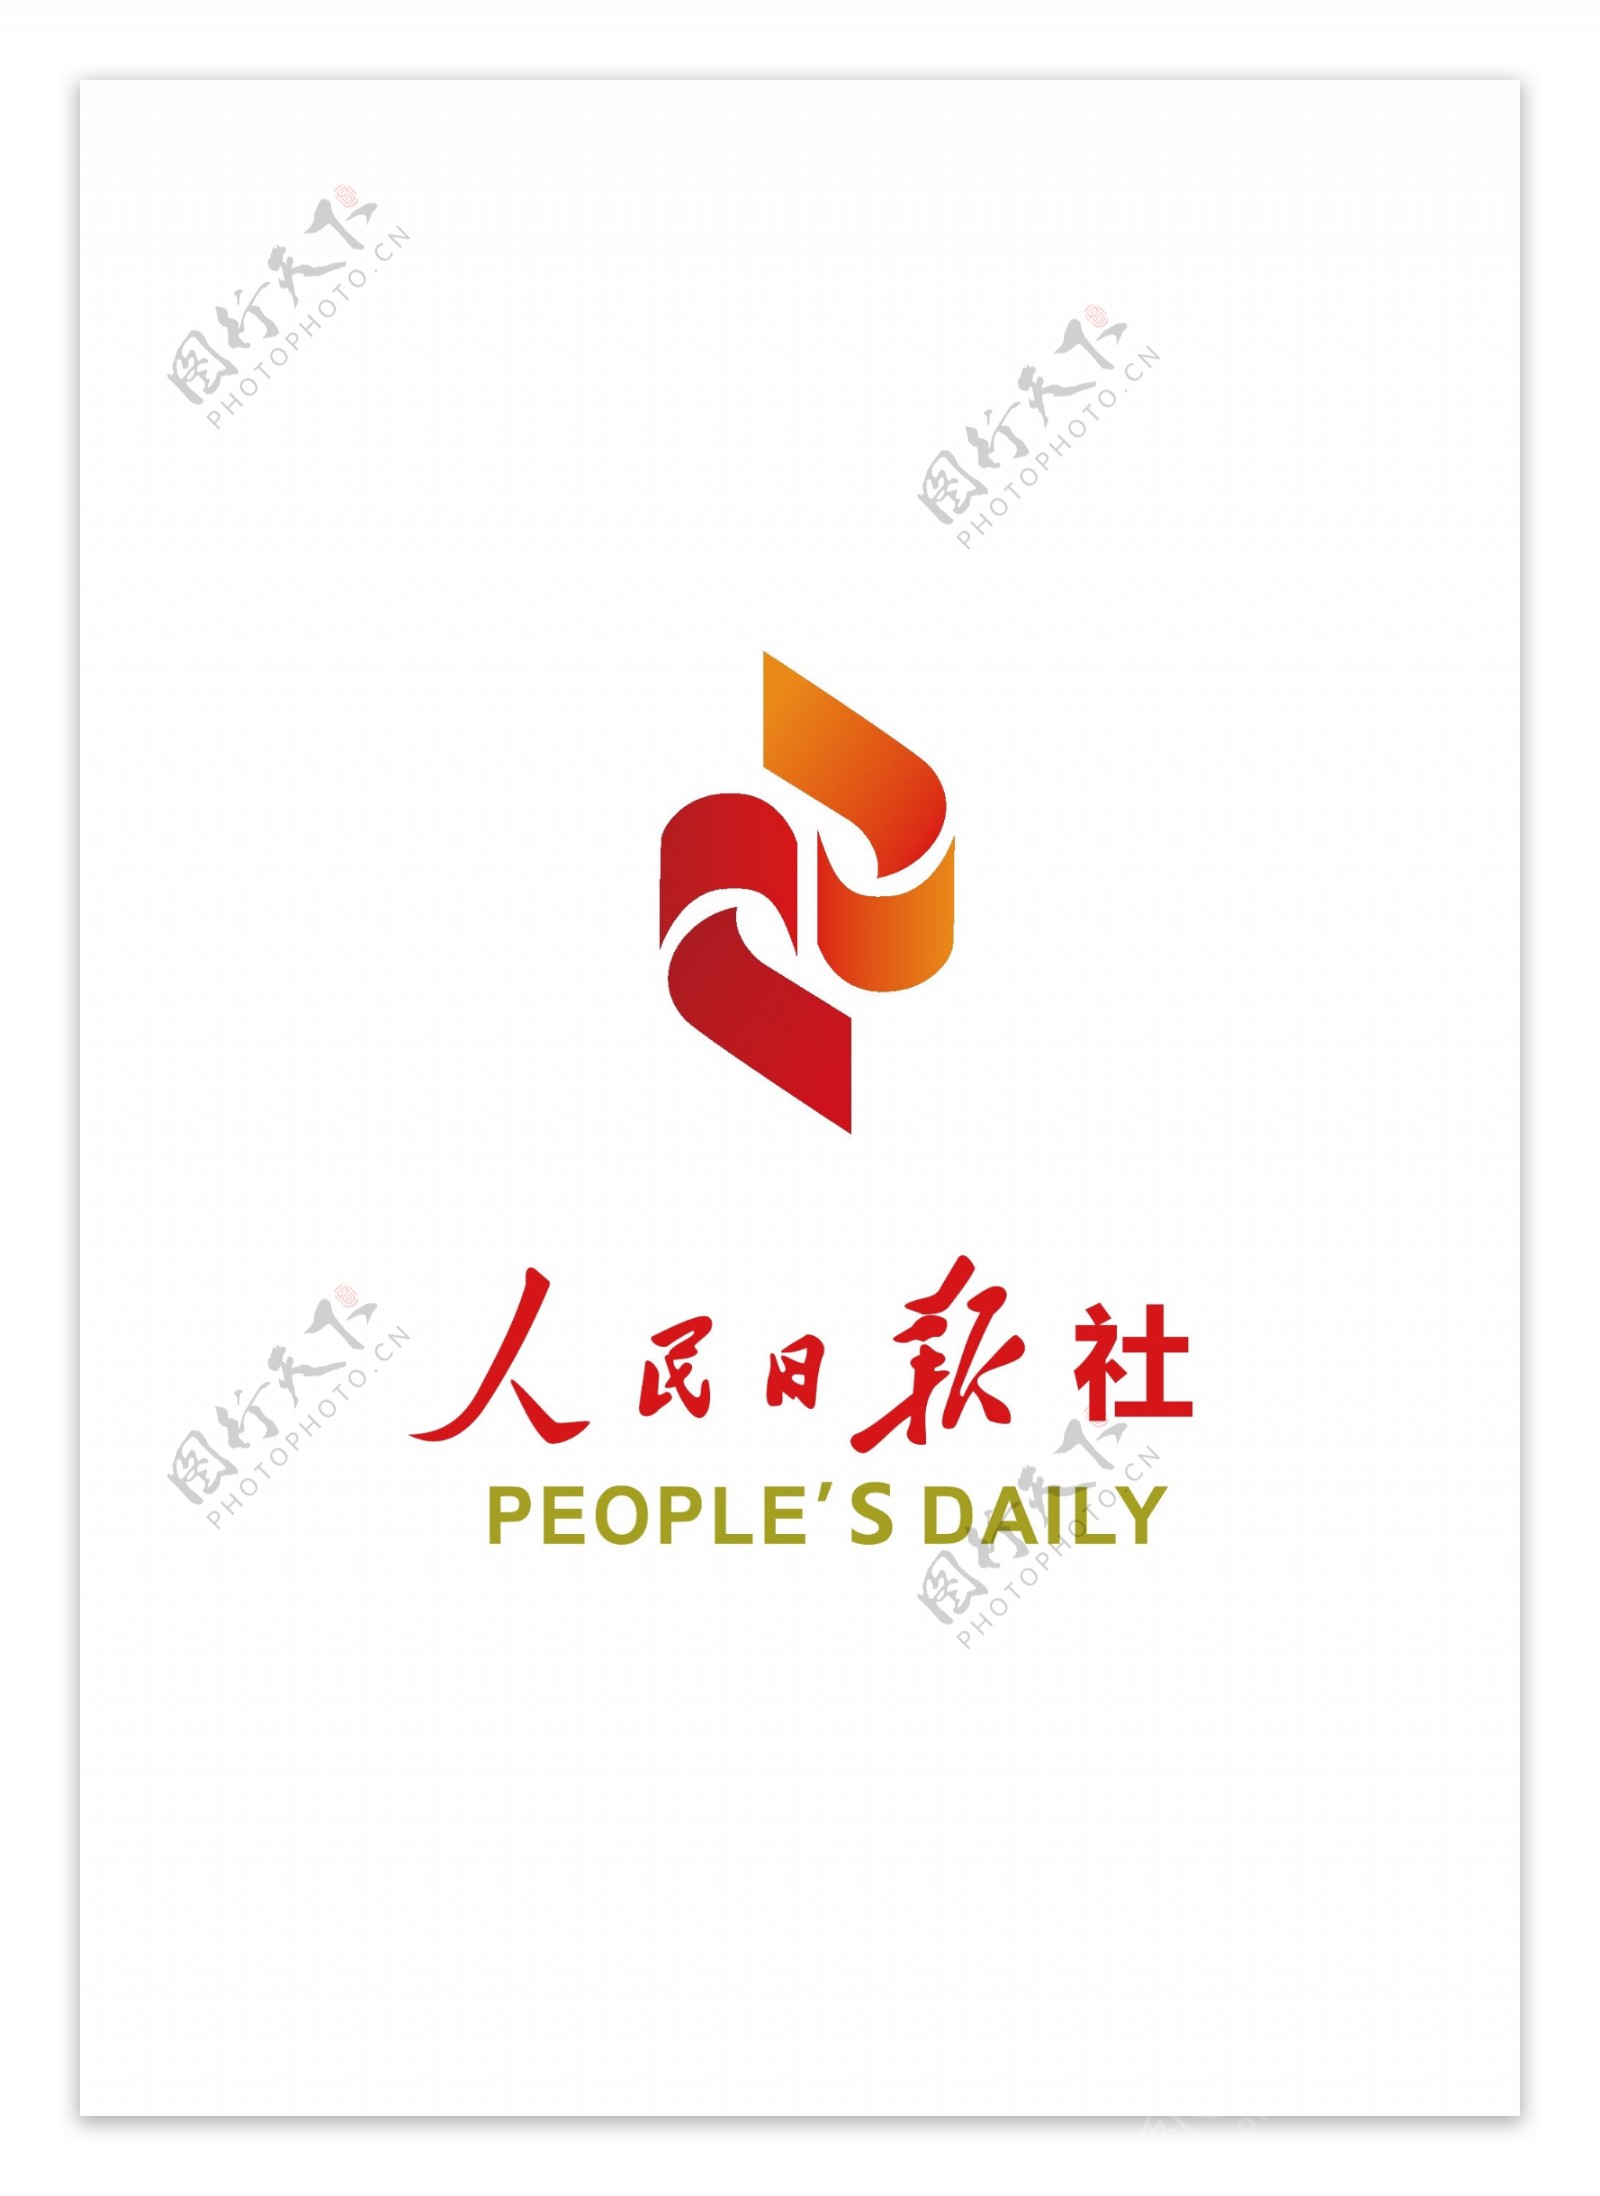 人民日报社标志logo